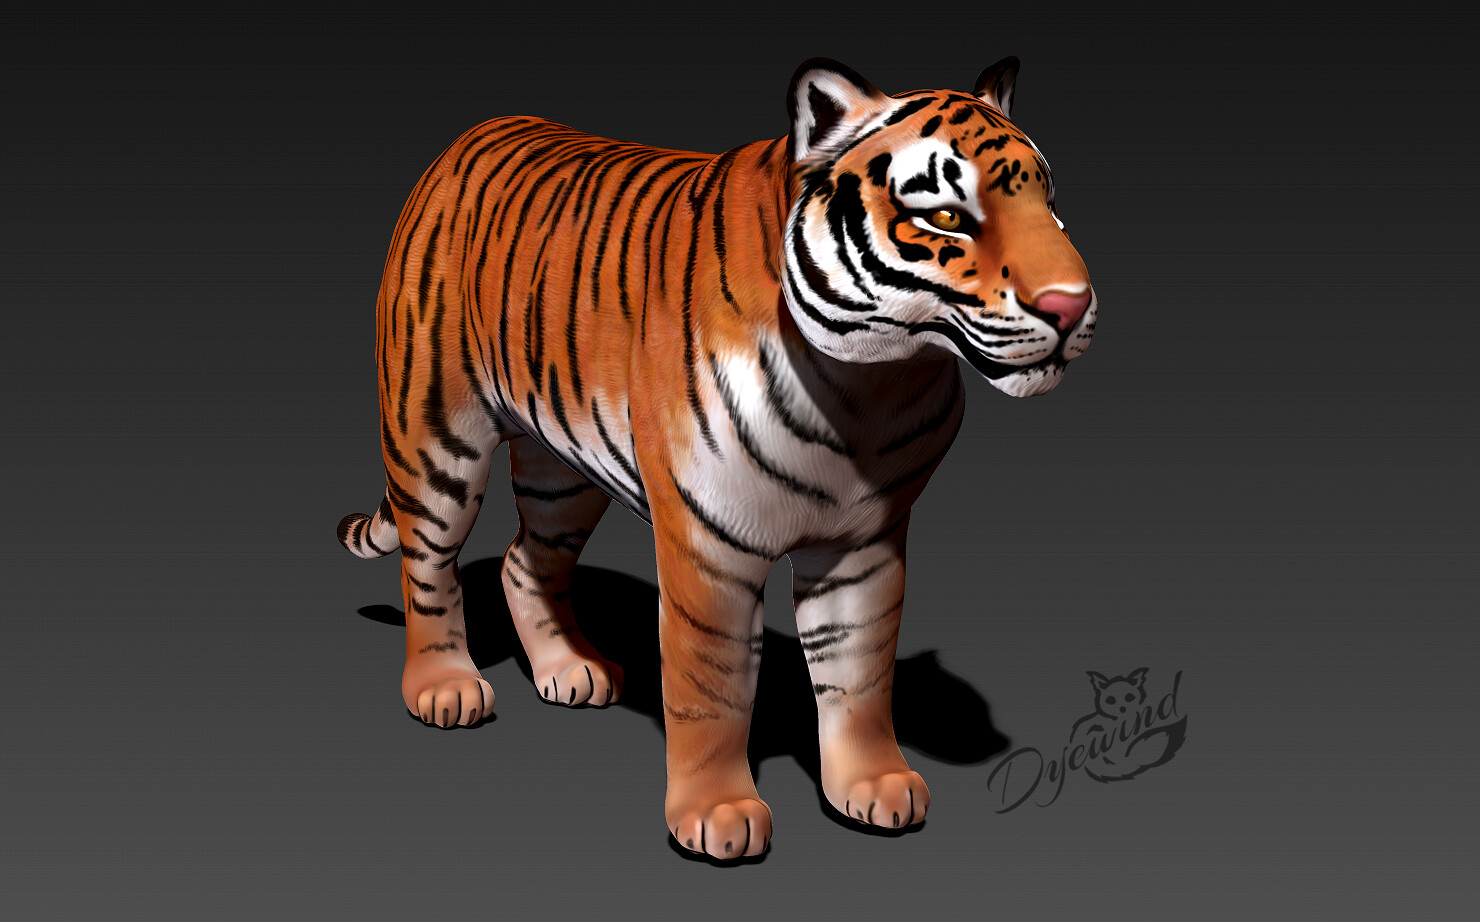 3D Tiger On Camera Tutorial In Hindi